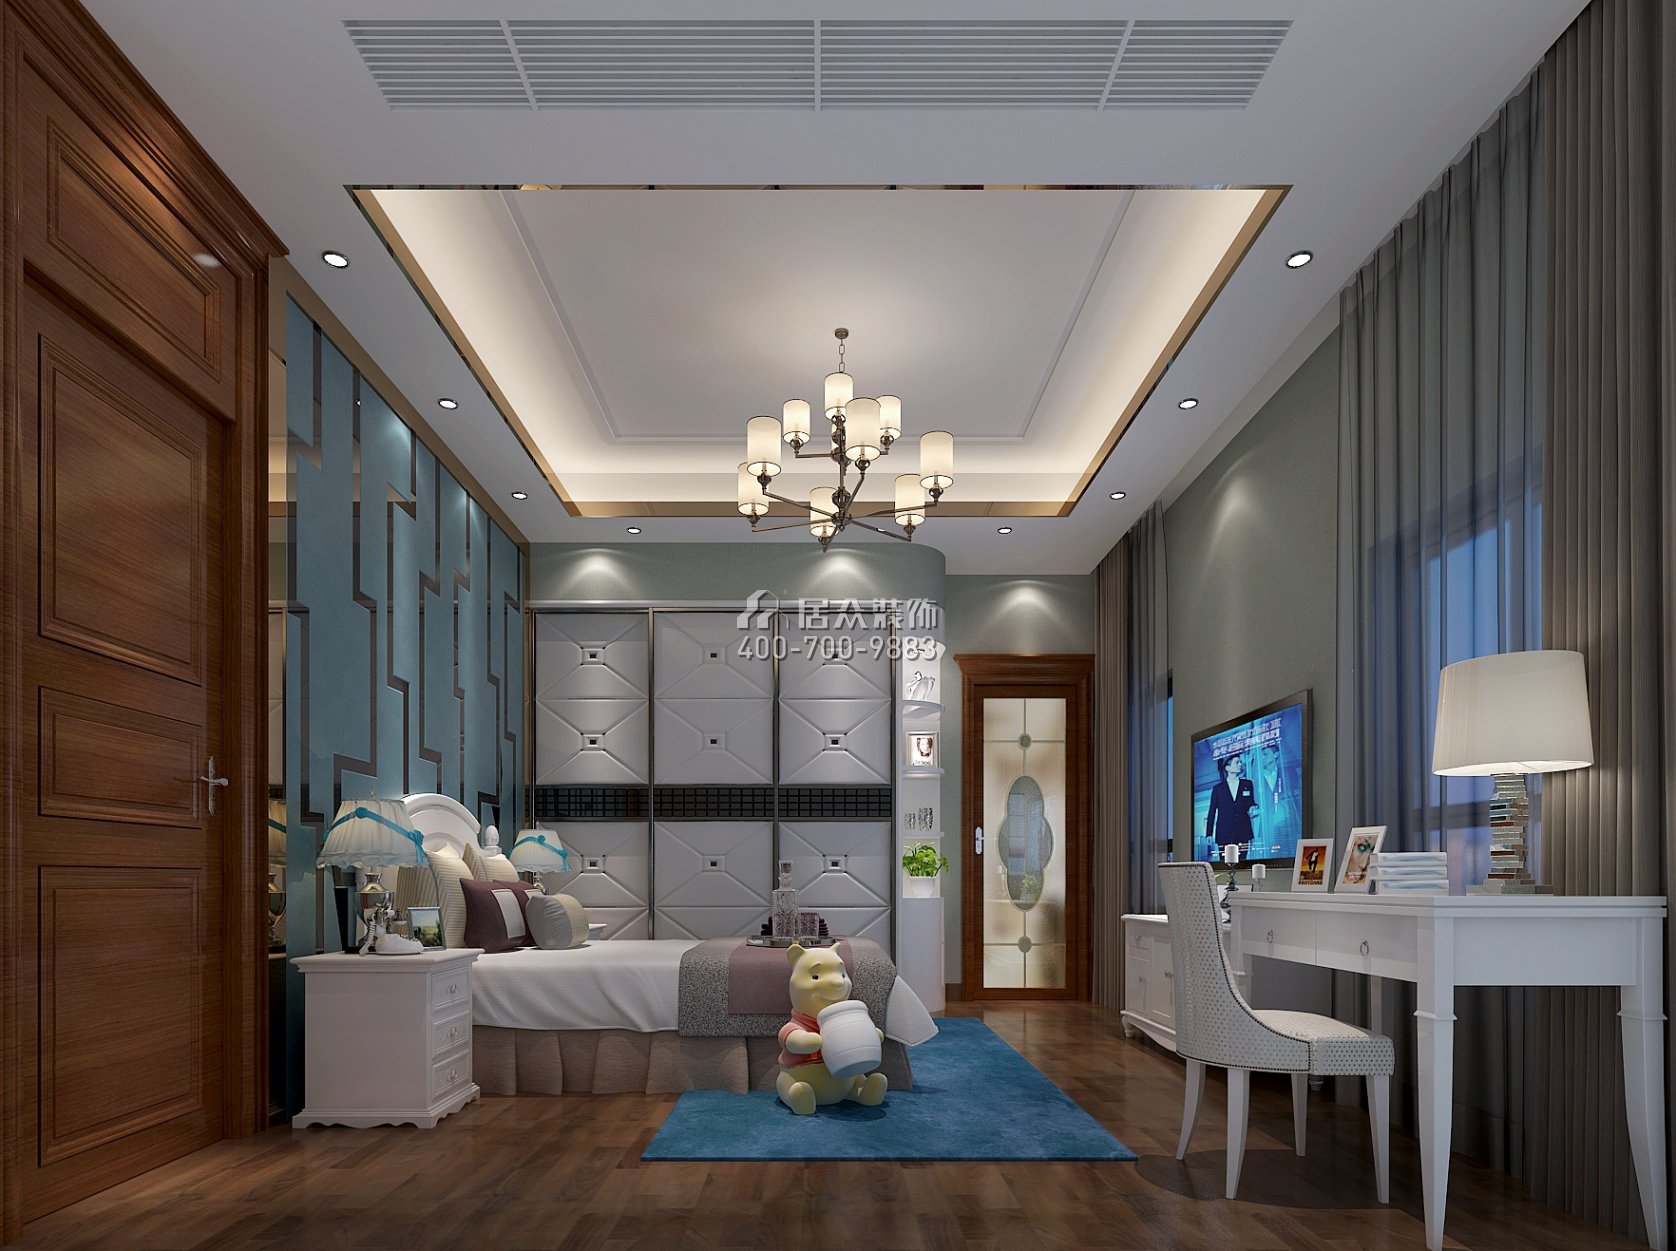 雅宝新城450平方米中式风格别墅户型卧室装修效果图